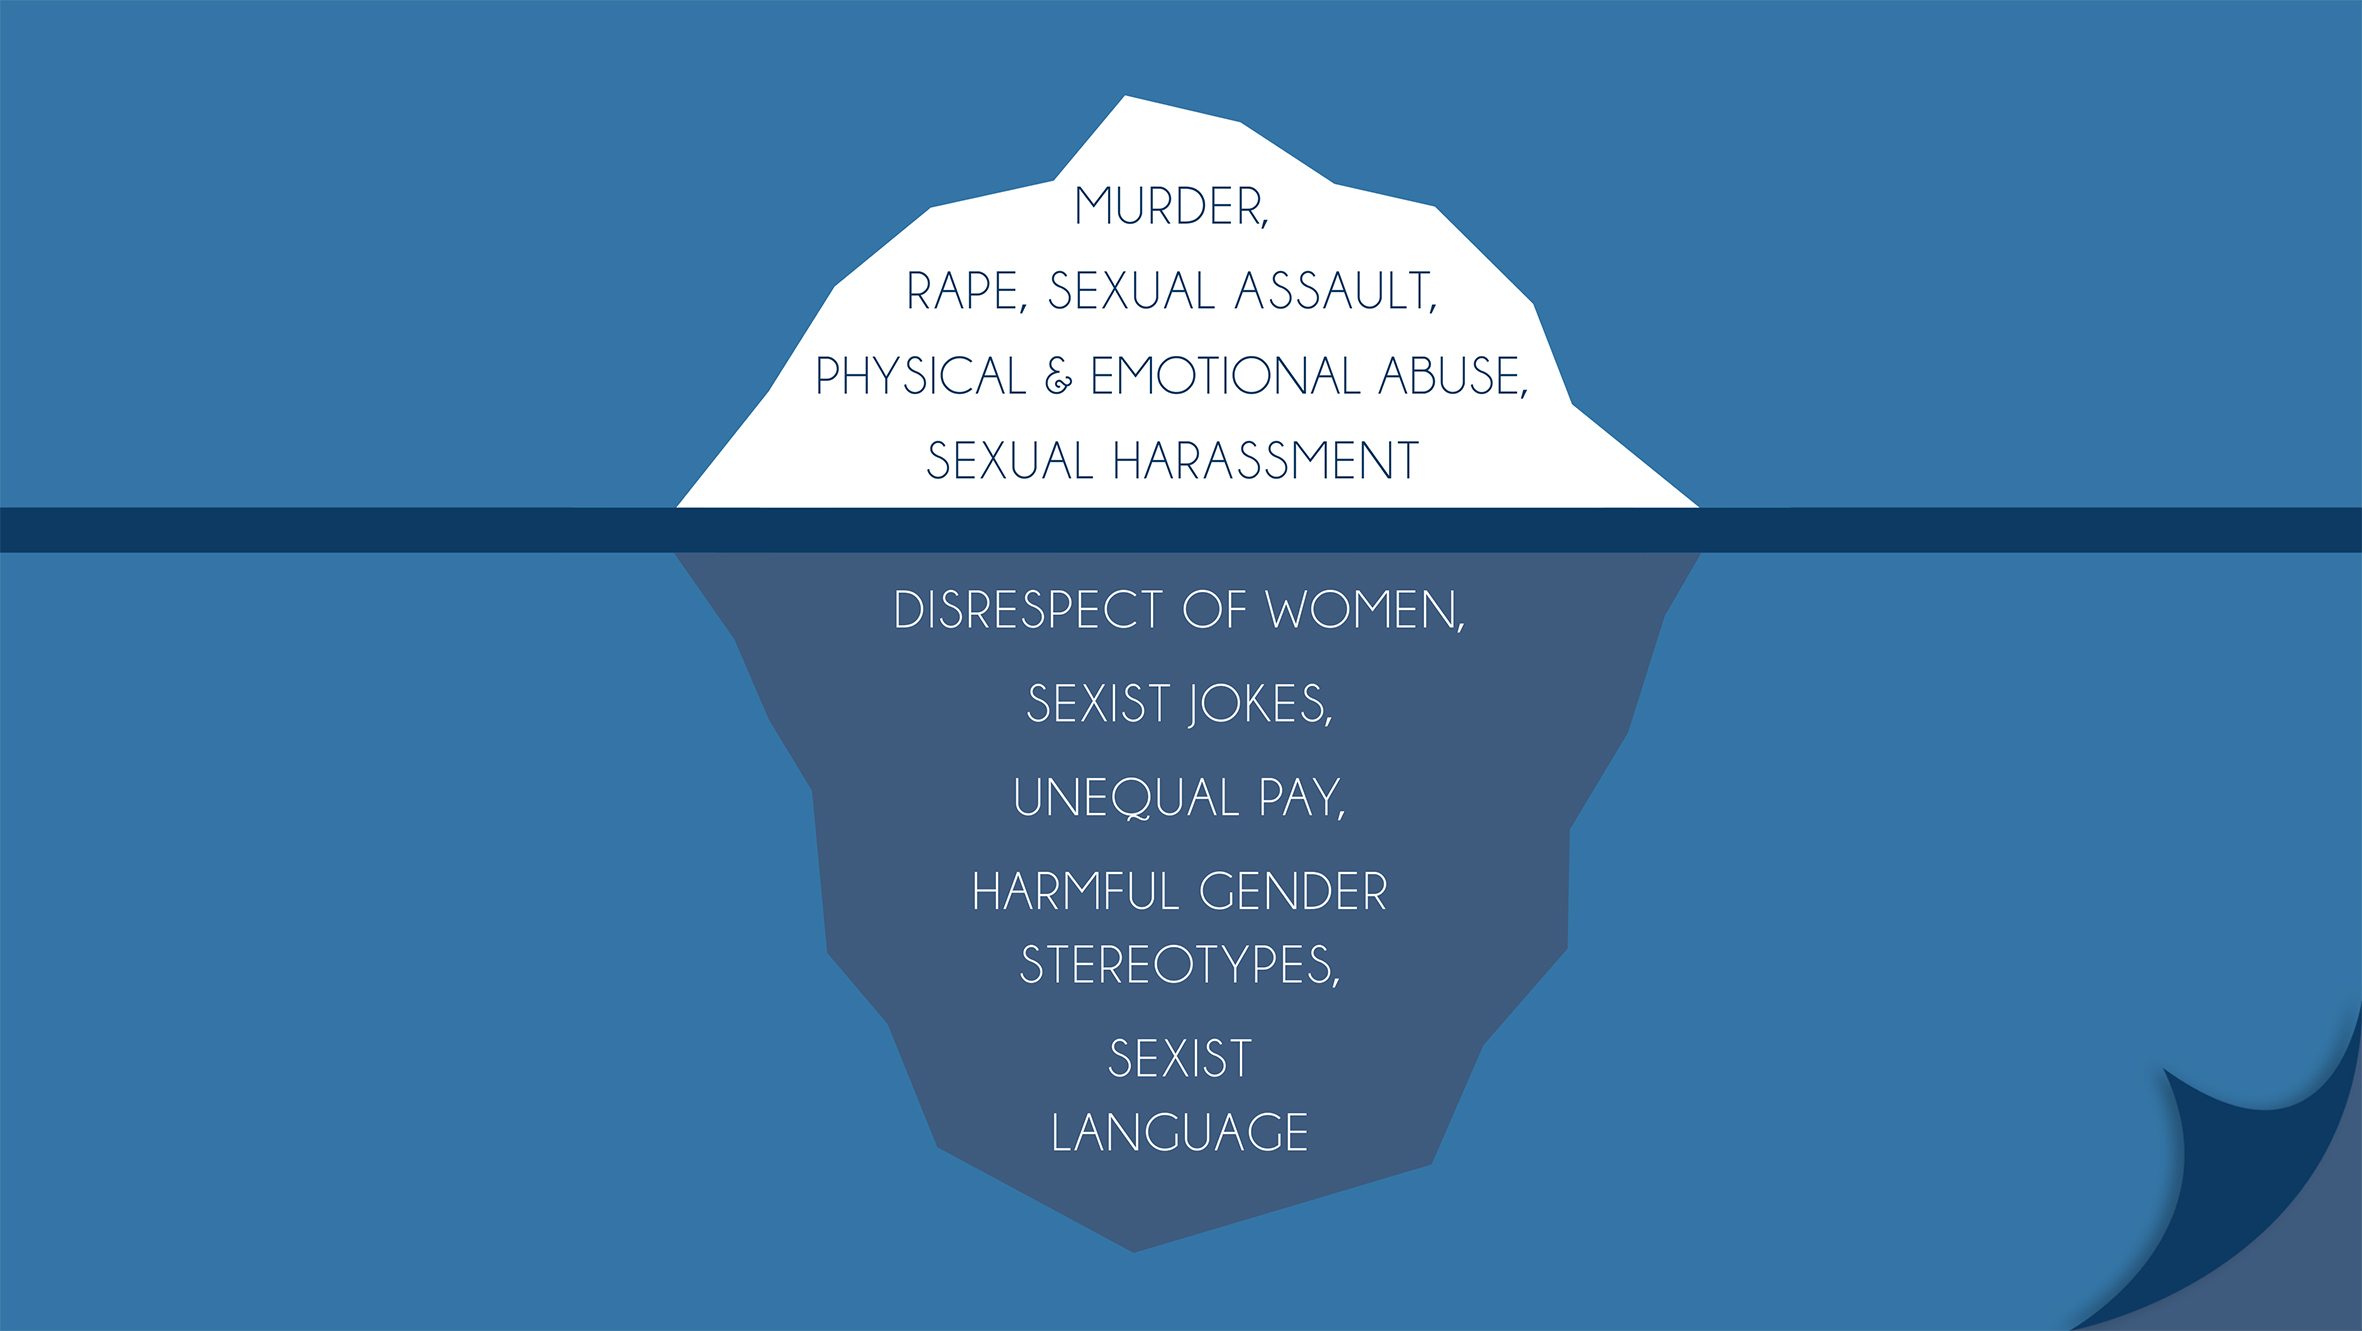 Iceberg image of violence towards women